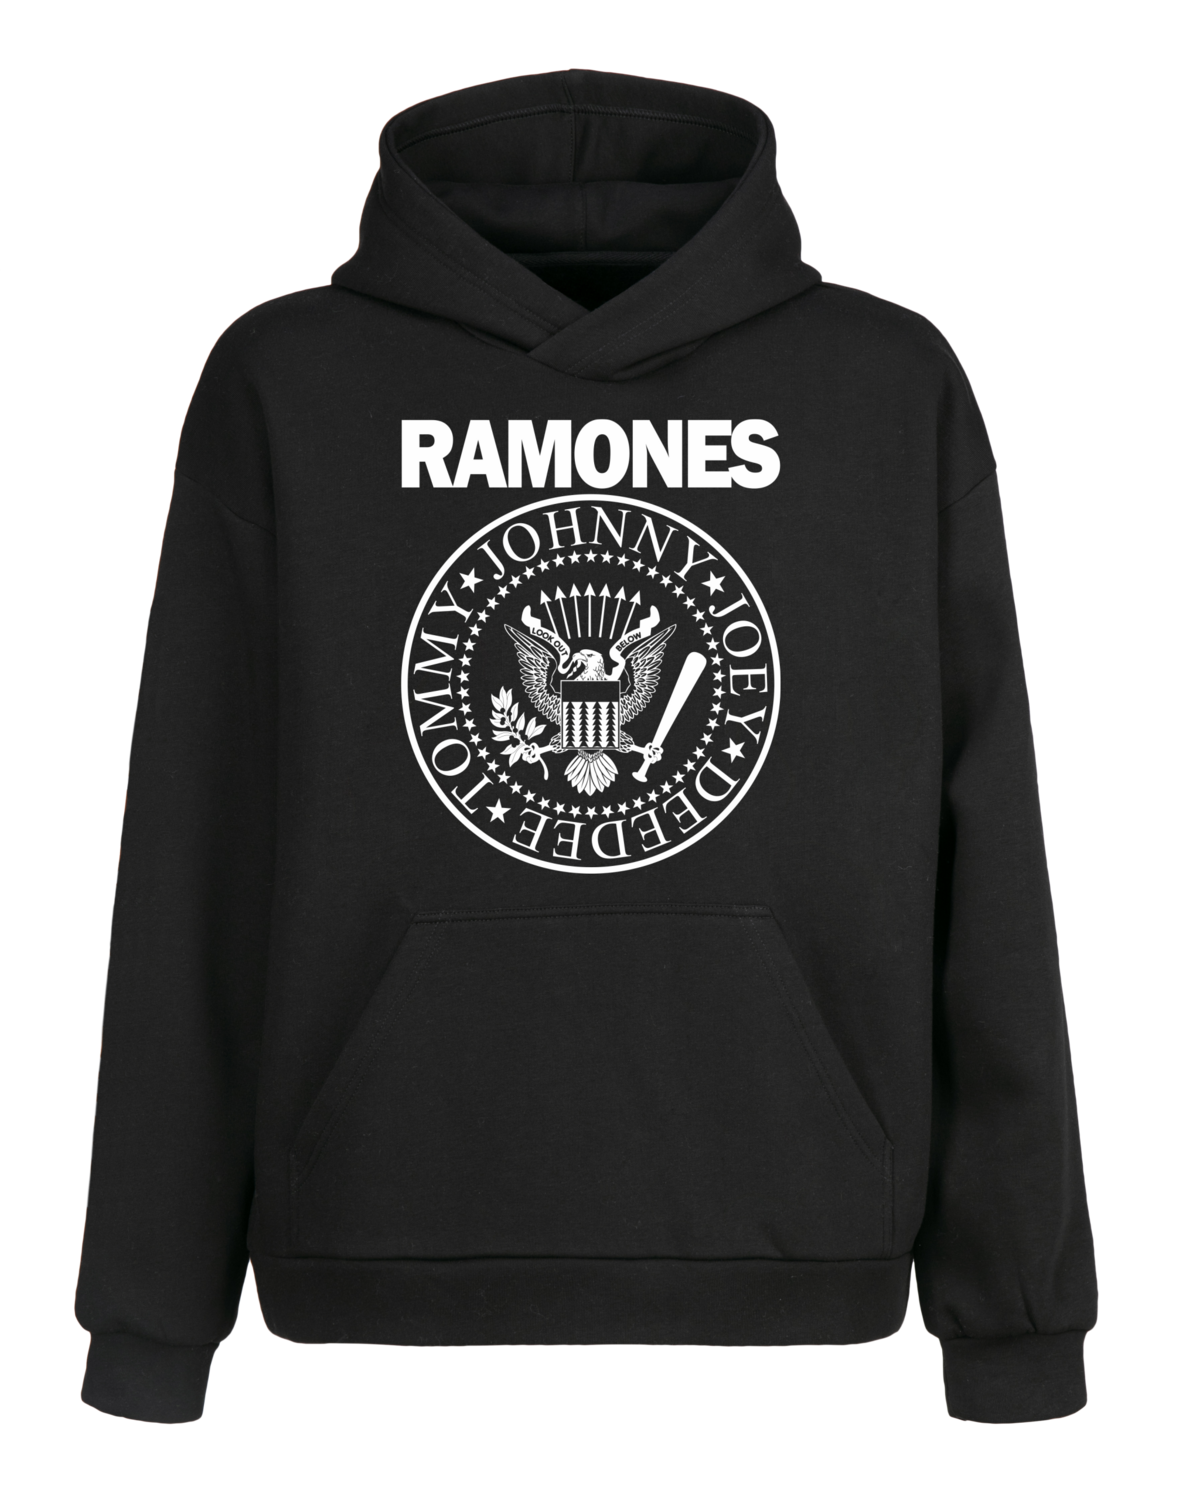 Canguro Ramones